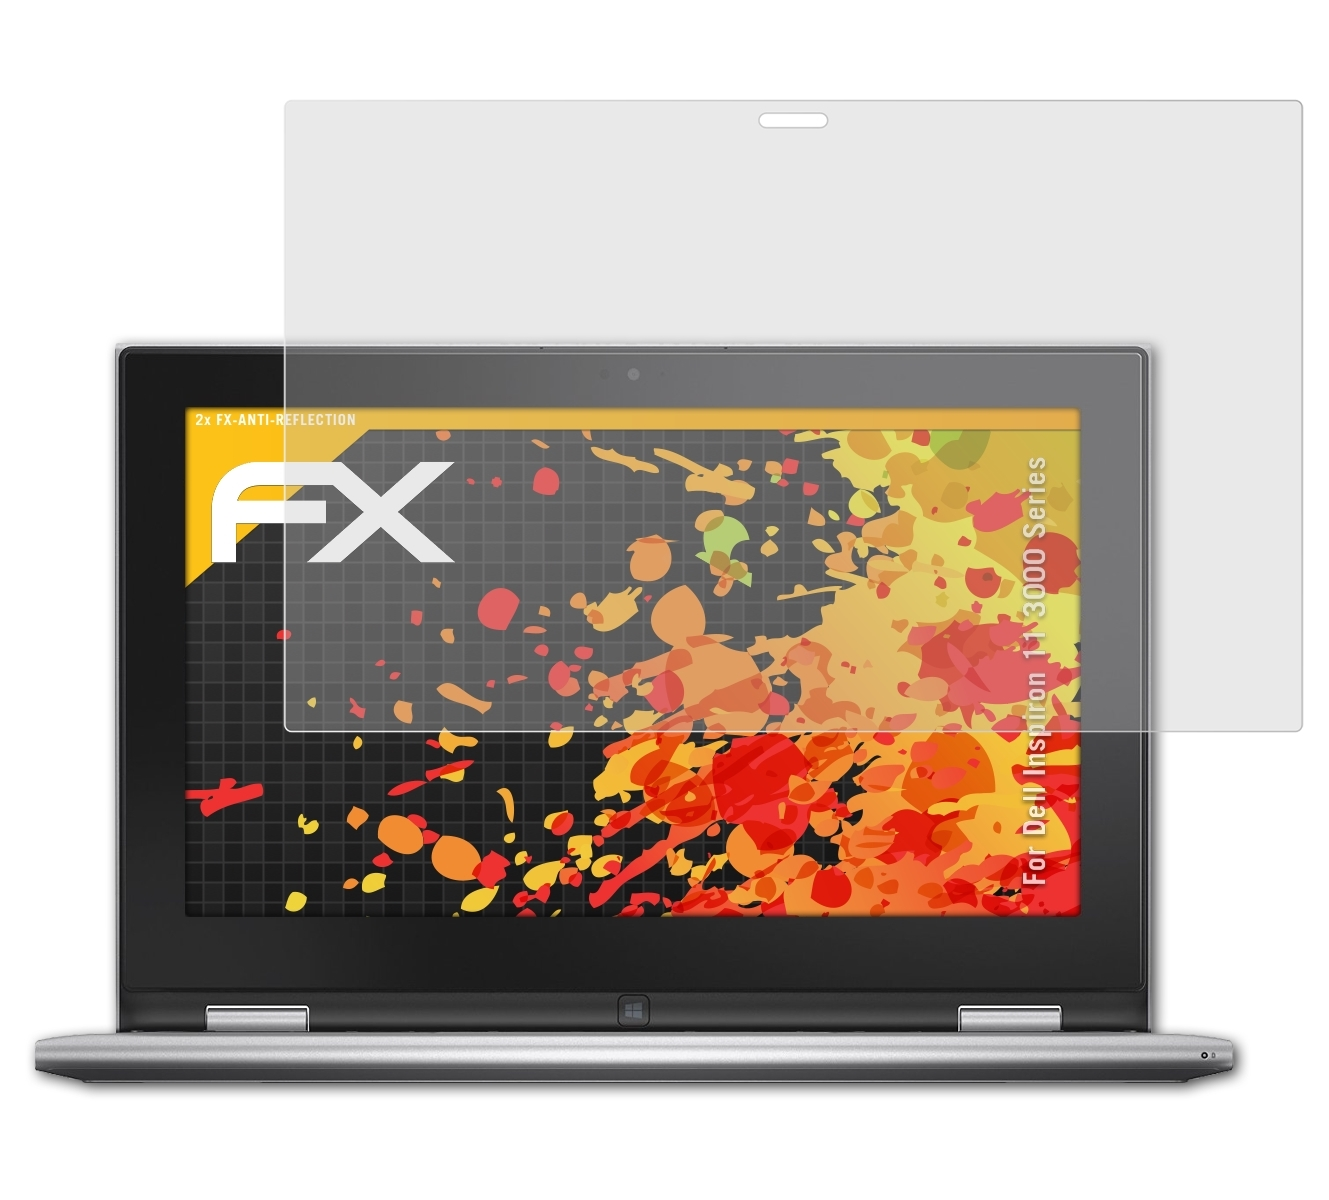 ATFOLIX 2x 11 Series)) Dell Inspiron (3000 Displayschutz(für FX-Antireflex